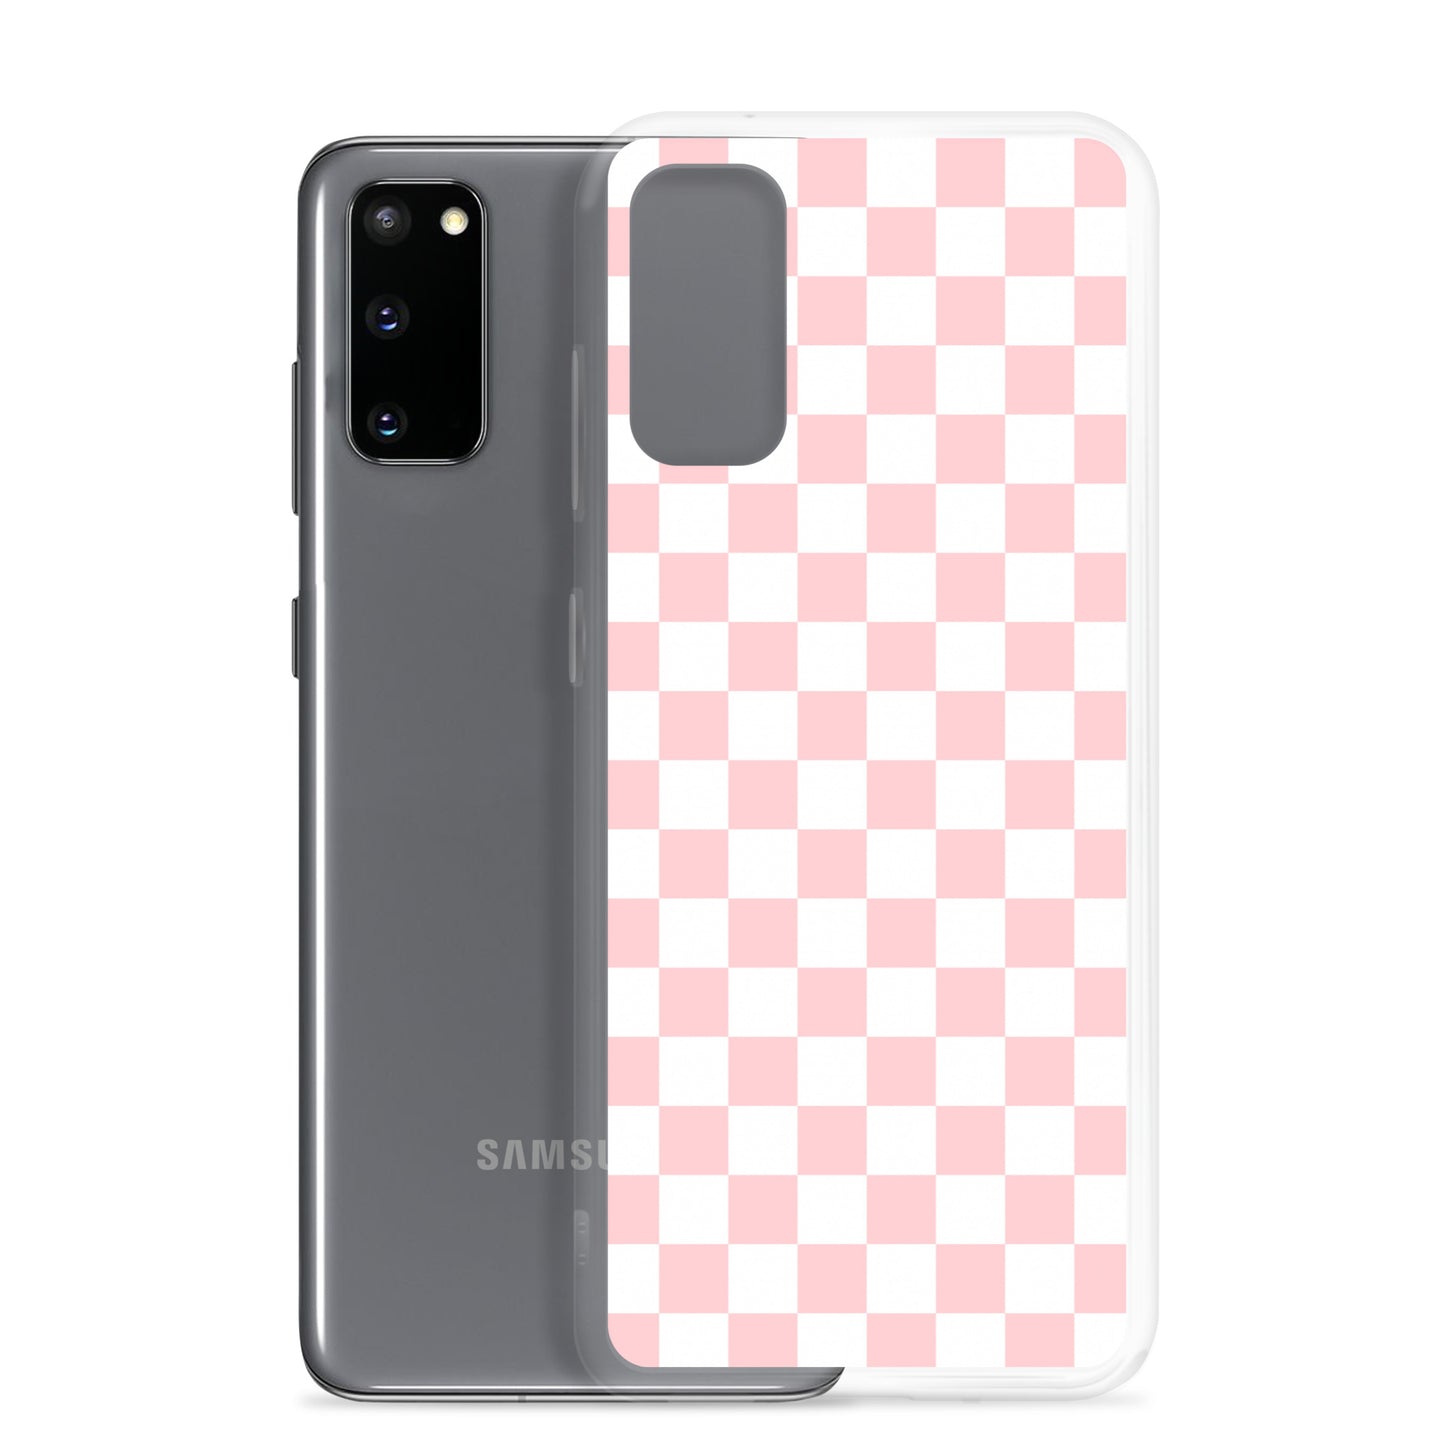 Small Pink Checks Samsung